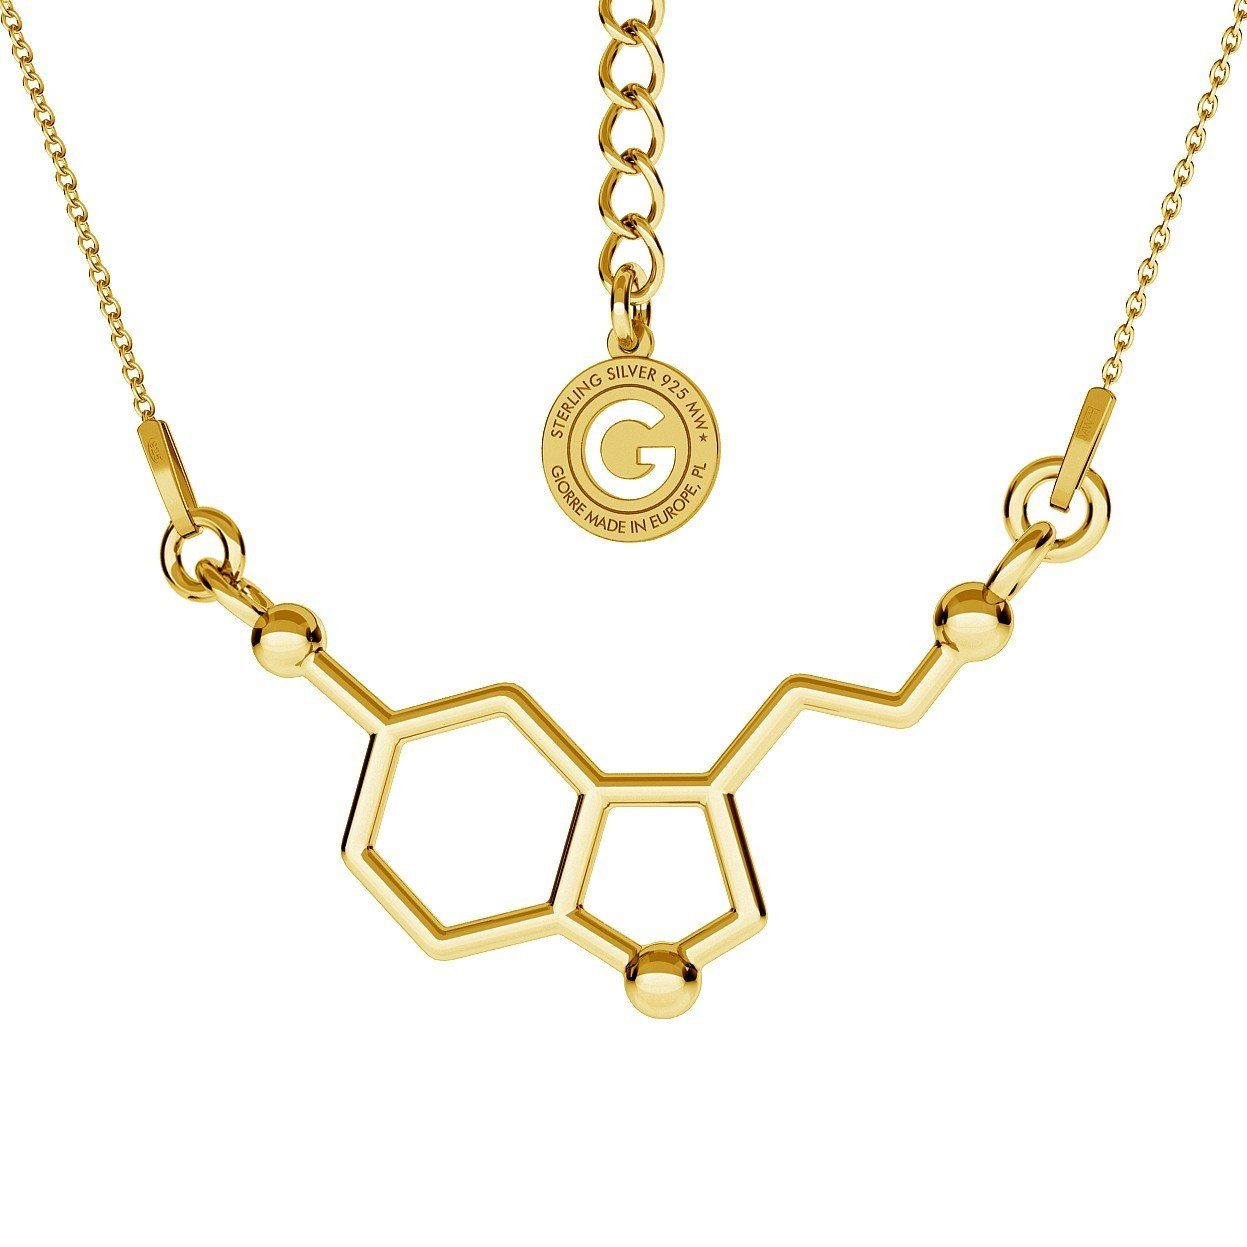 Halskette mit Serotonin Anhänger, Giorre Formel von mit chemischen der Kette